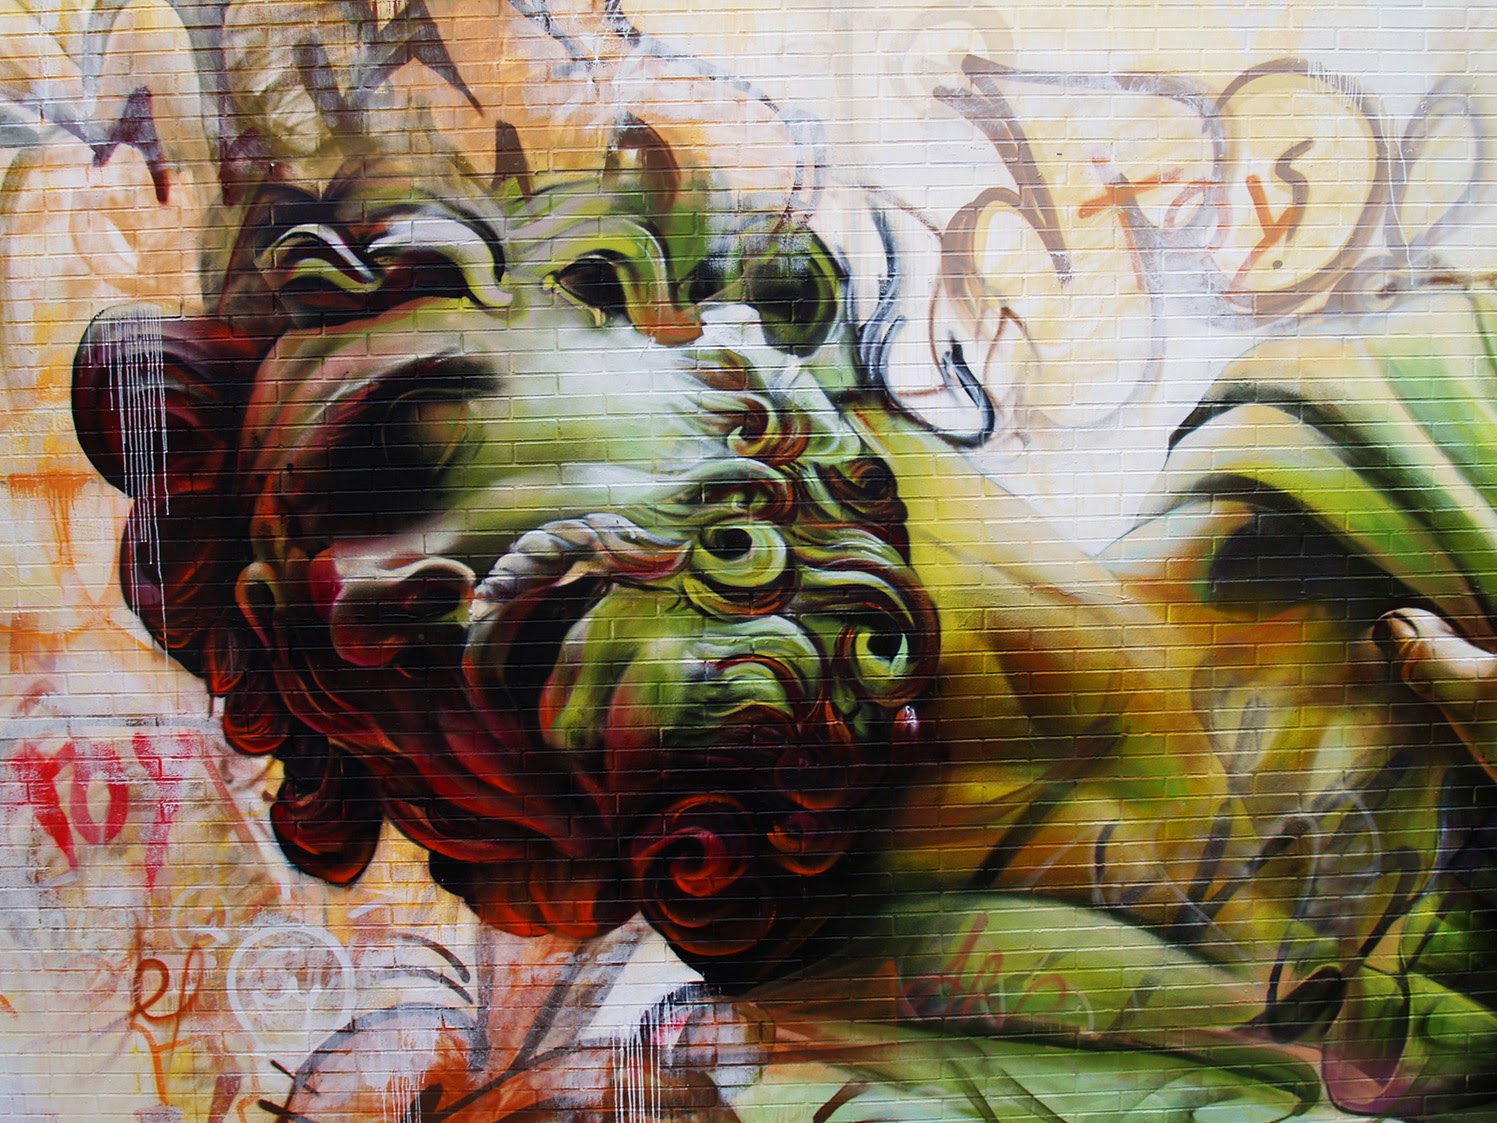 Hiperrealisztikus graffitik spanyol művészektől 